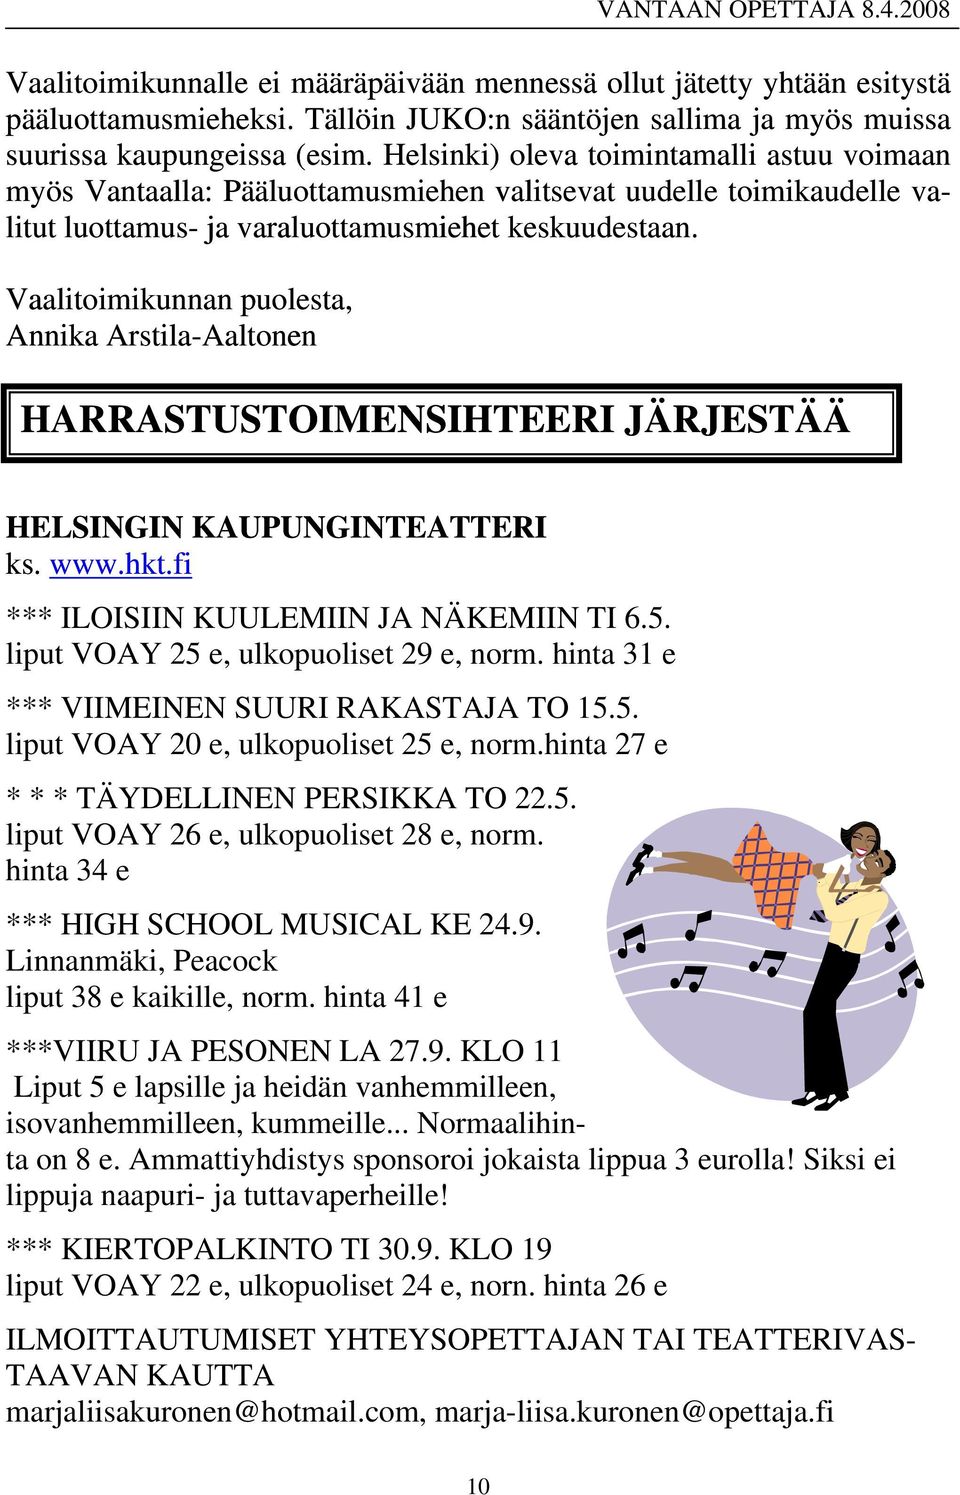 Vaalitoimikunnan puolesta, Annika Arstila-Aaltonen HARRASTUSTOIMENSIHTEERI JÄRJESTÄÄ H ELSINGIN KAUPUNGINTEATTERI k s. www.hkt.fi *** ILOISIIN KUULEMIIN JA NÄKEMIIN TI 6.5.